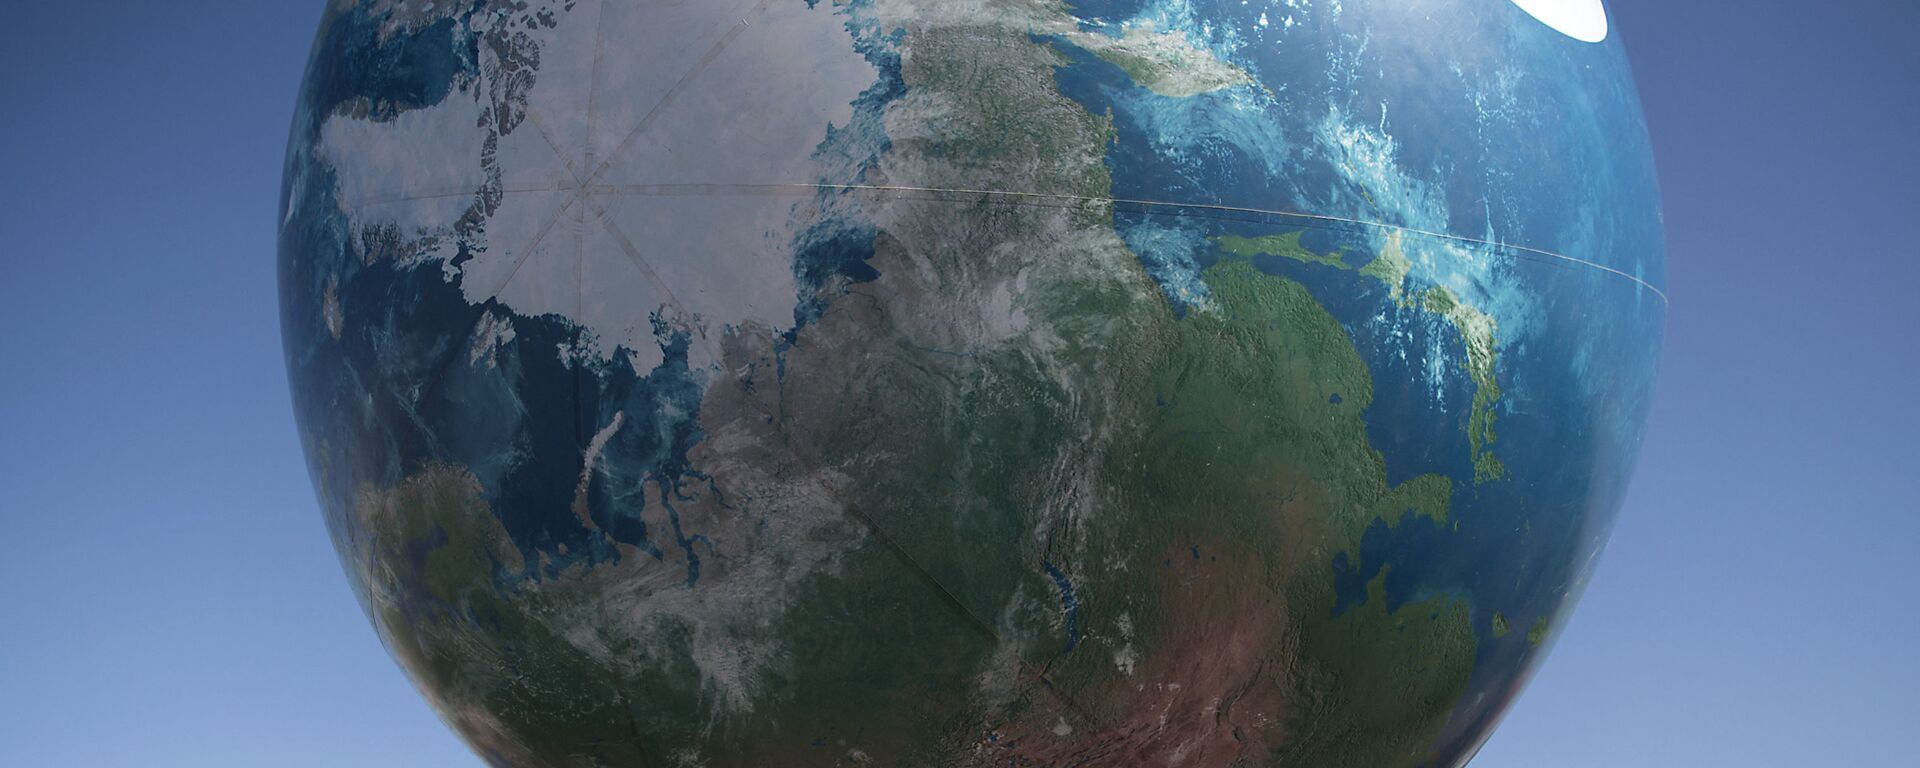 Члены всемирной конференции ООН по вопросам изменения климата с макетом Земли - Sputnik Латвия, 1920, 19.06.2021